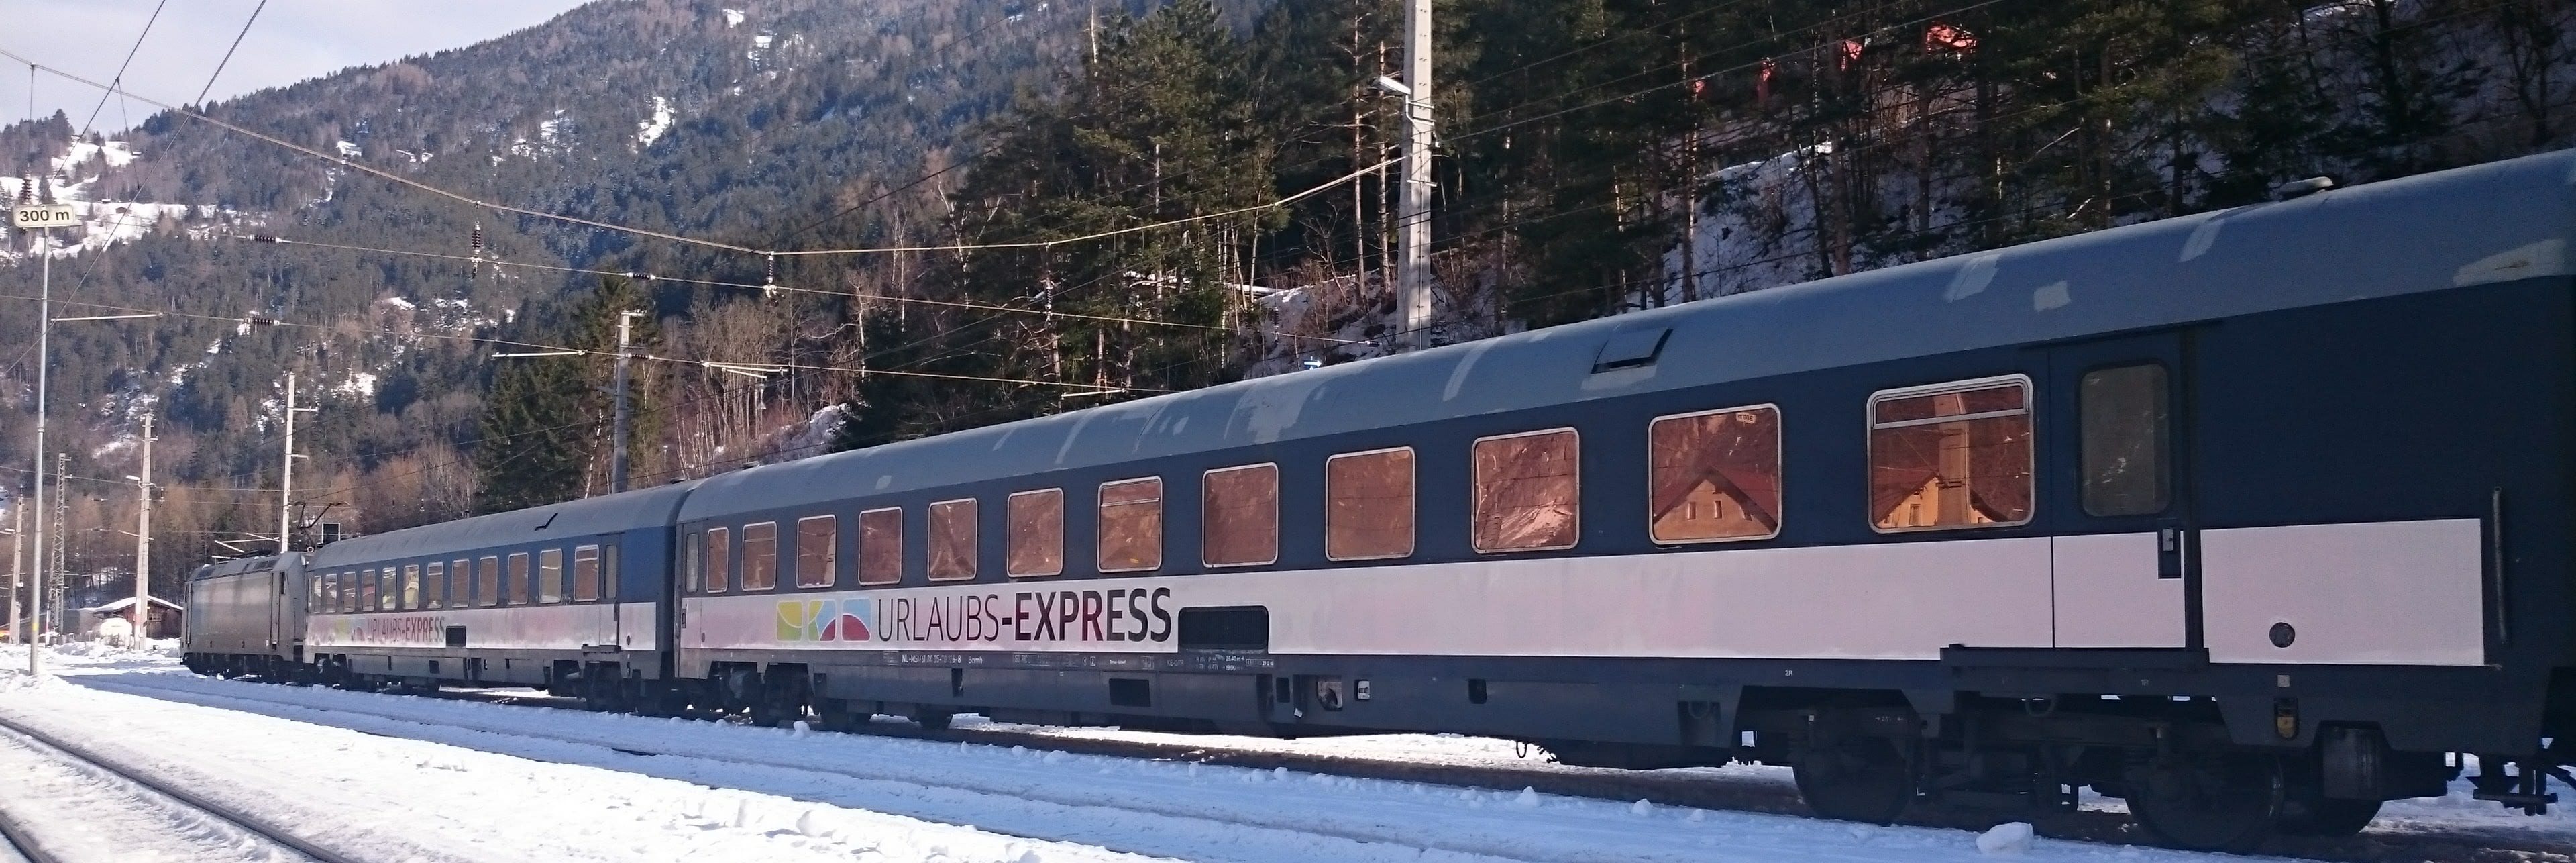 Liegewagen Winter – Urlaubs-Express